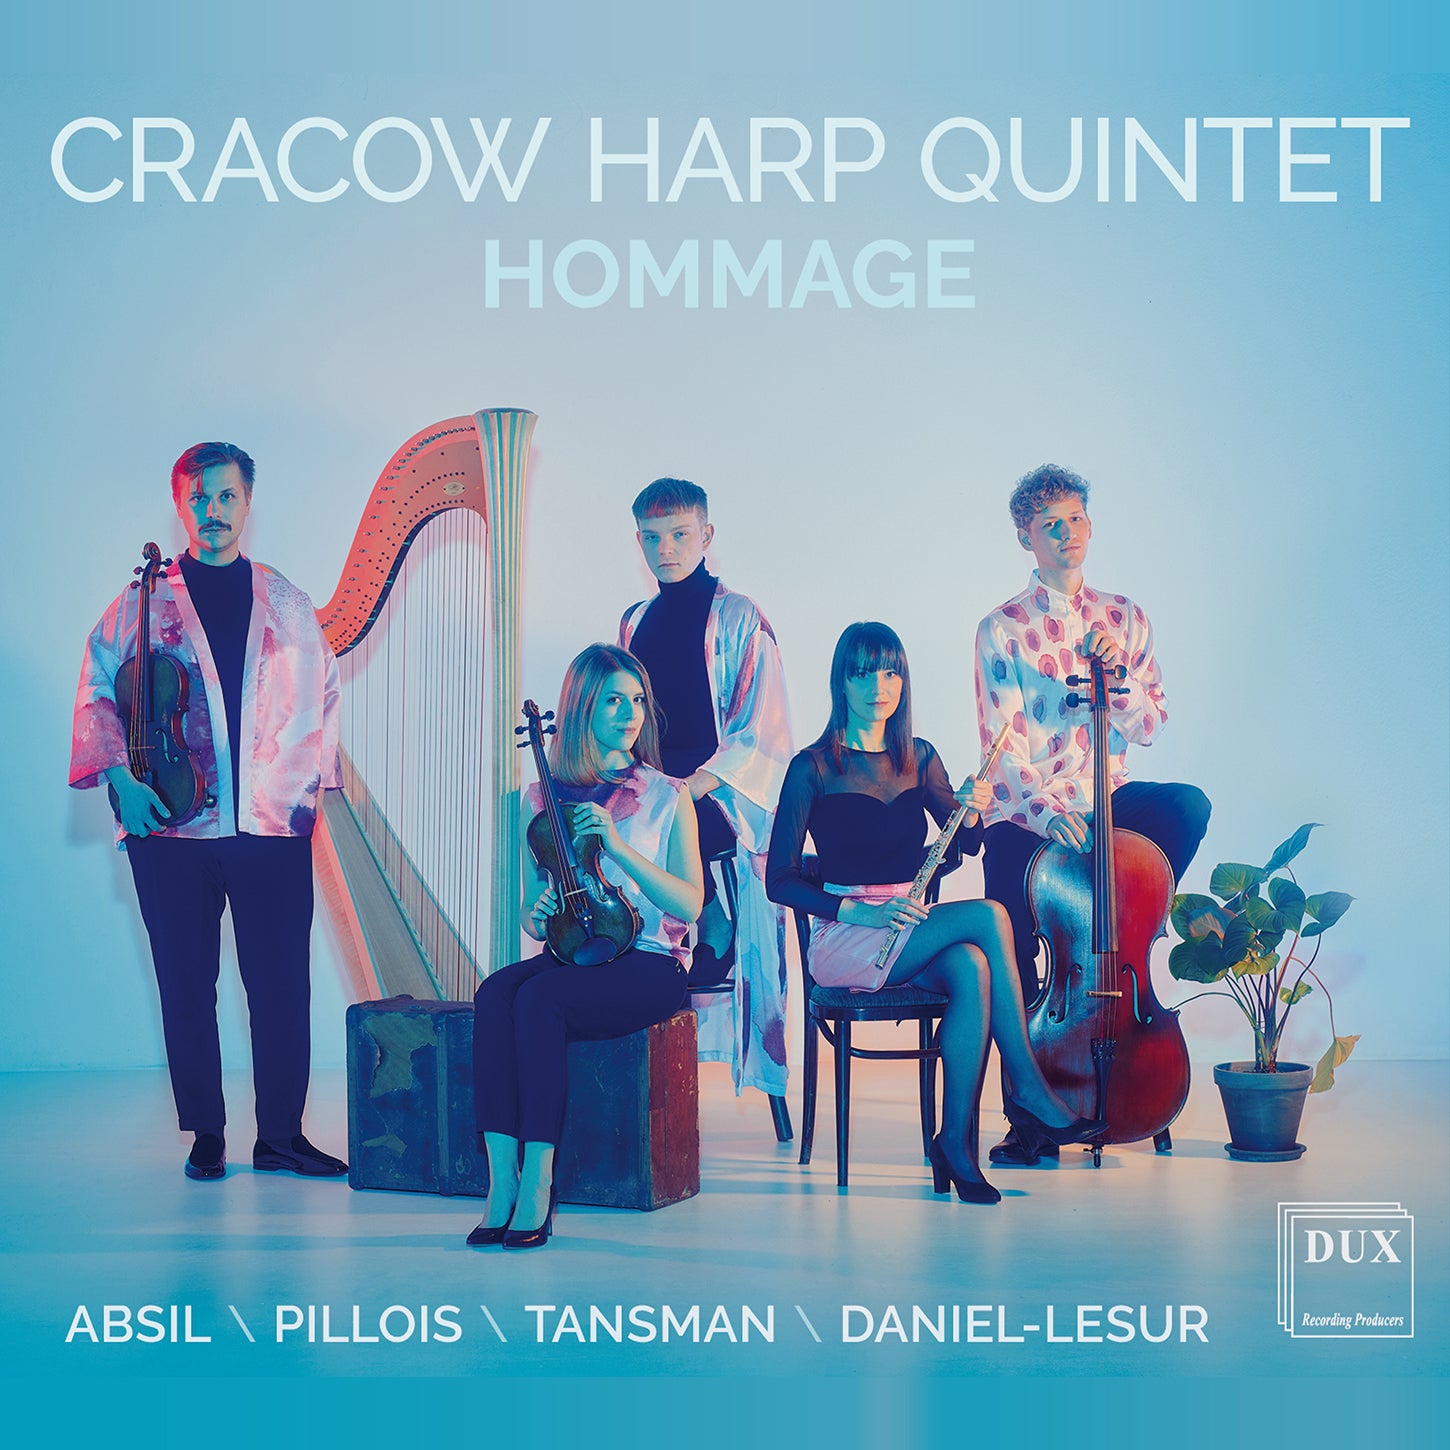 Absil, Daniel-Lesur, Pillois & Tansman: Hommage / Cracow Harp Quintet